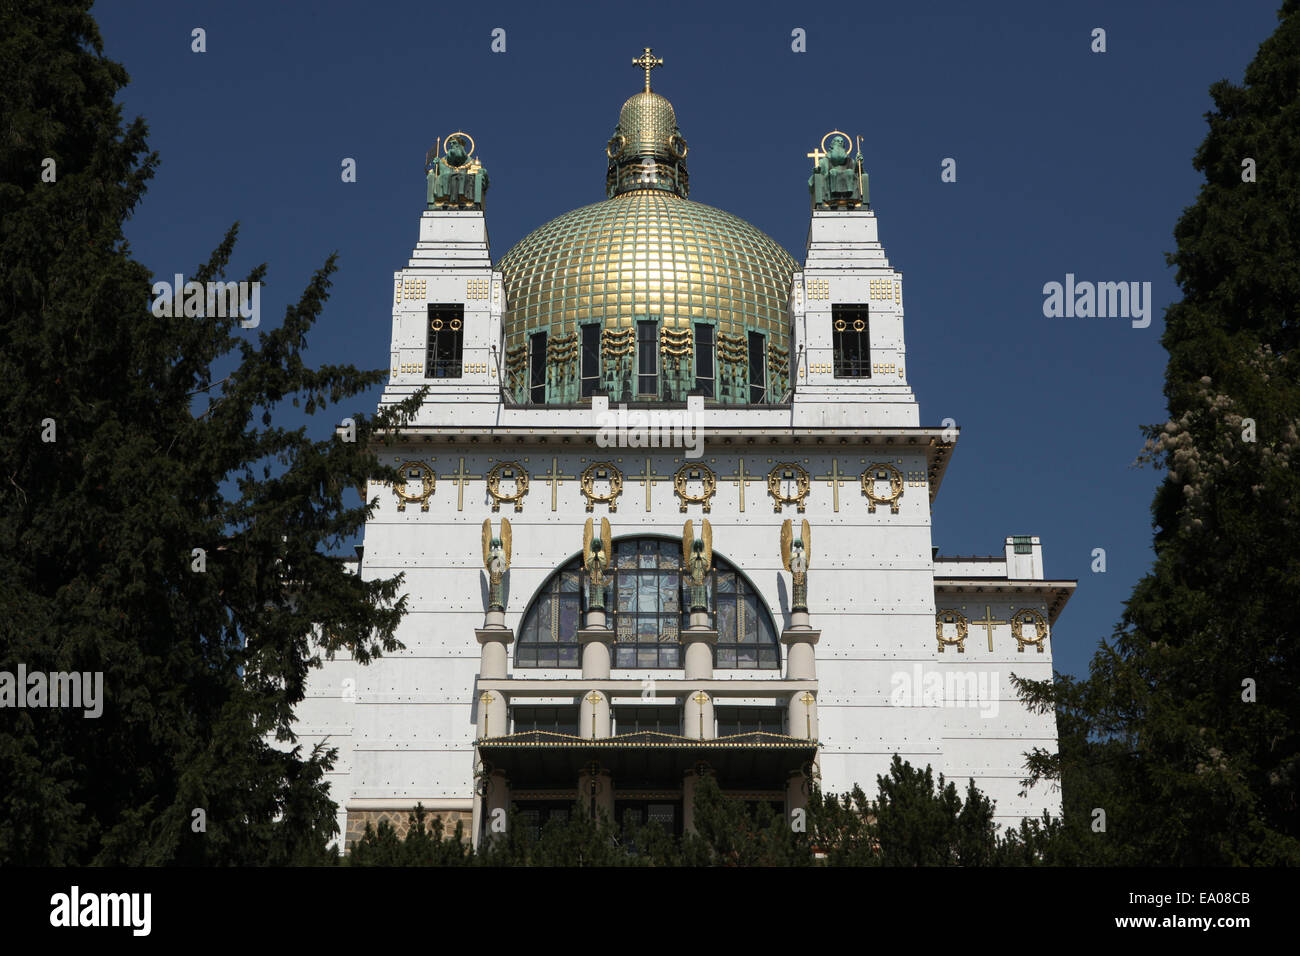 The Steinhof Church designed by Otto Wagner in Vienna, Austria. Stock Photo